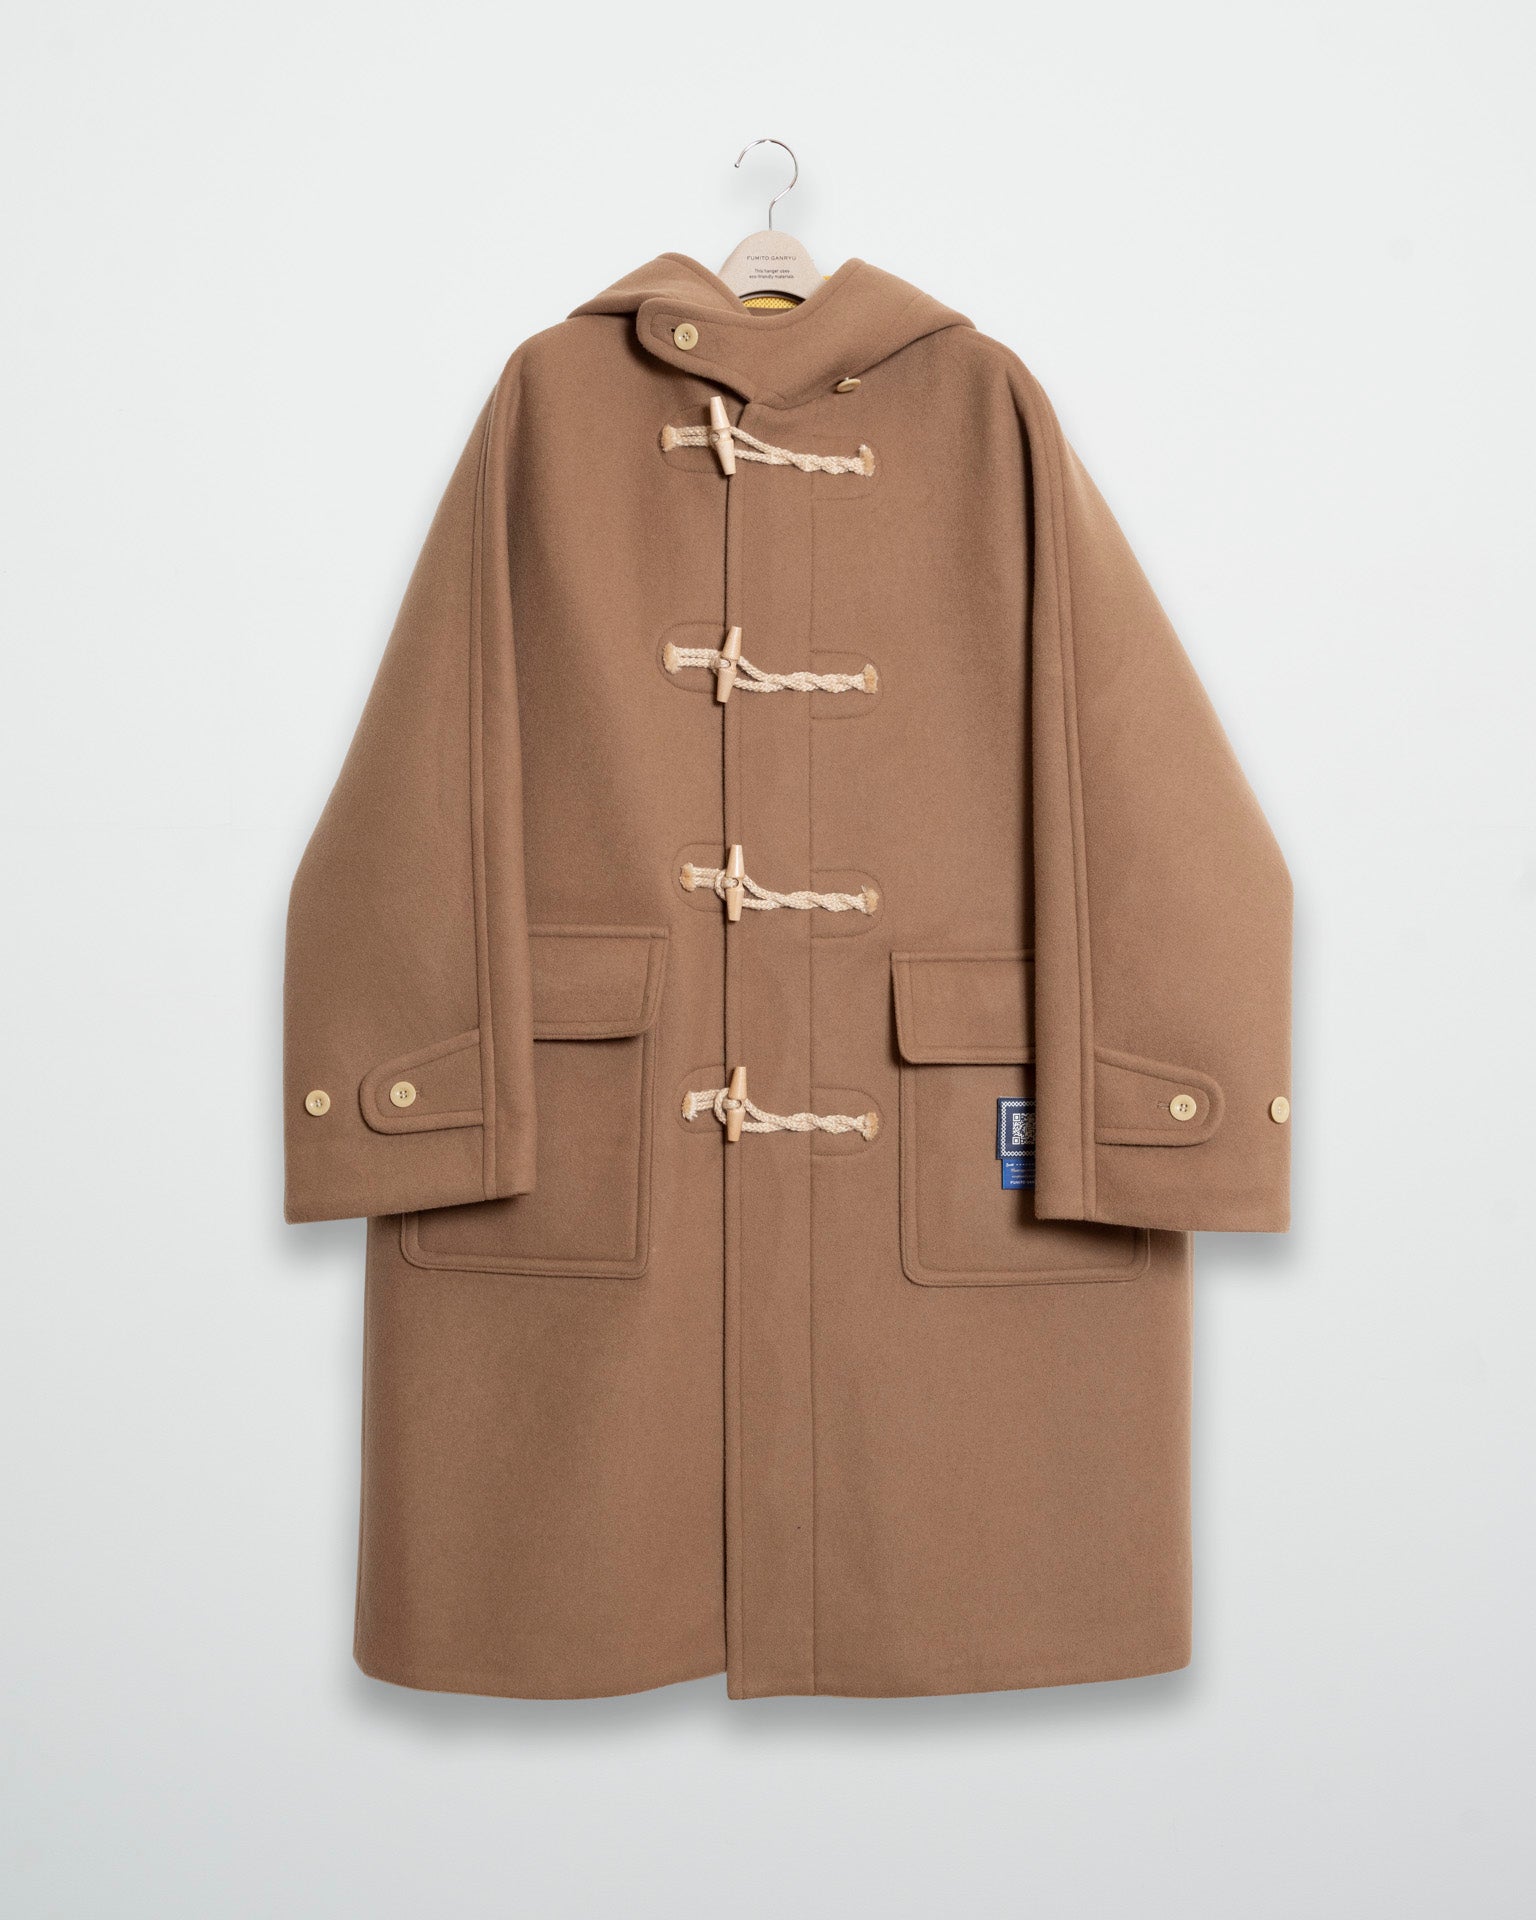 Vintage modern duffle coat